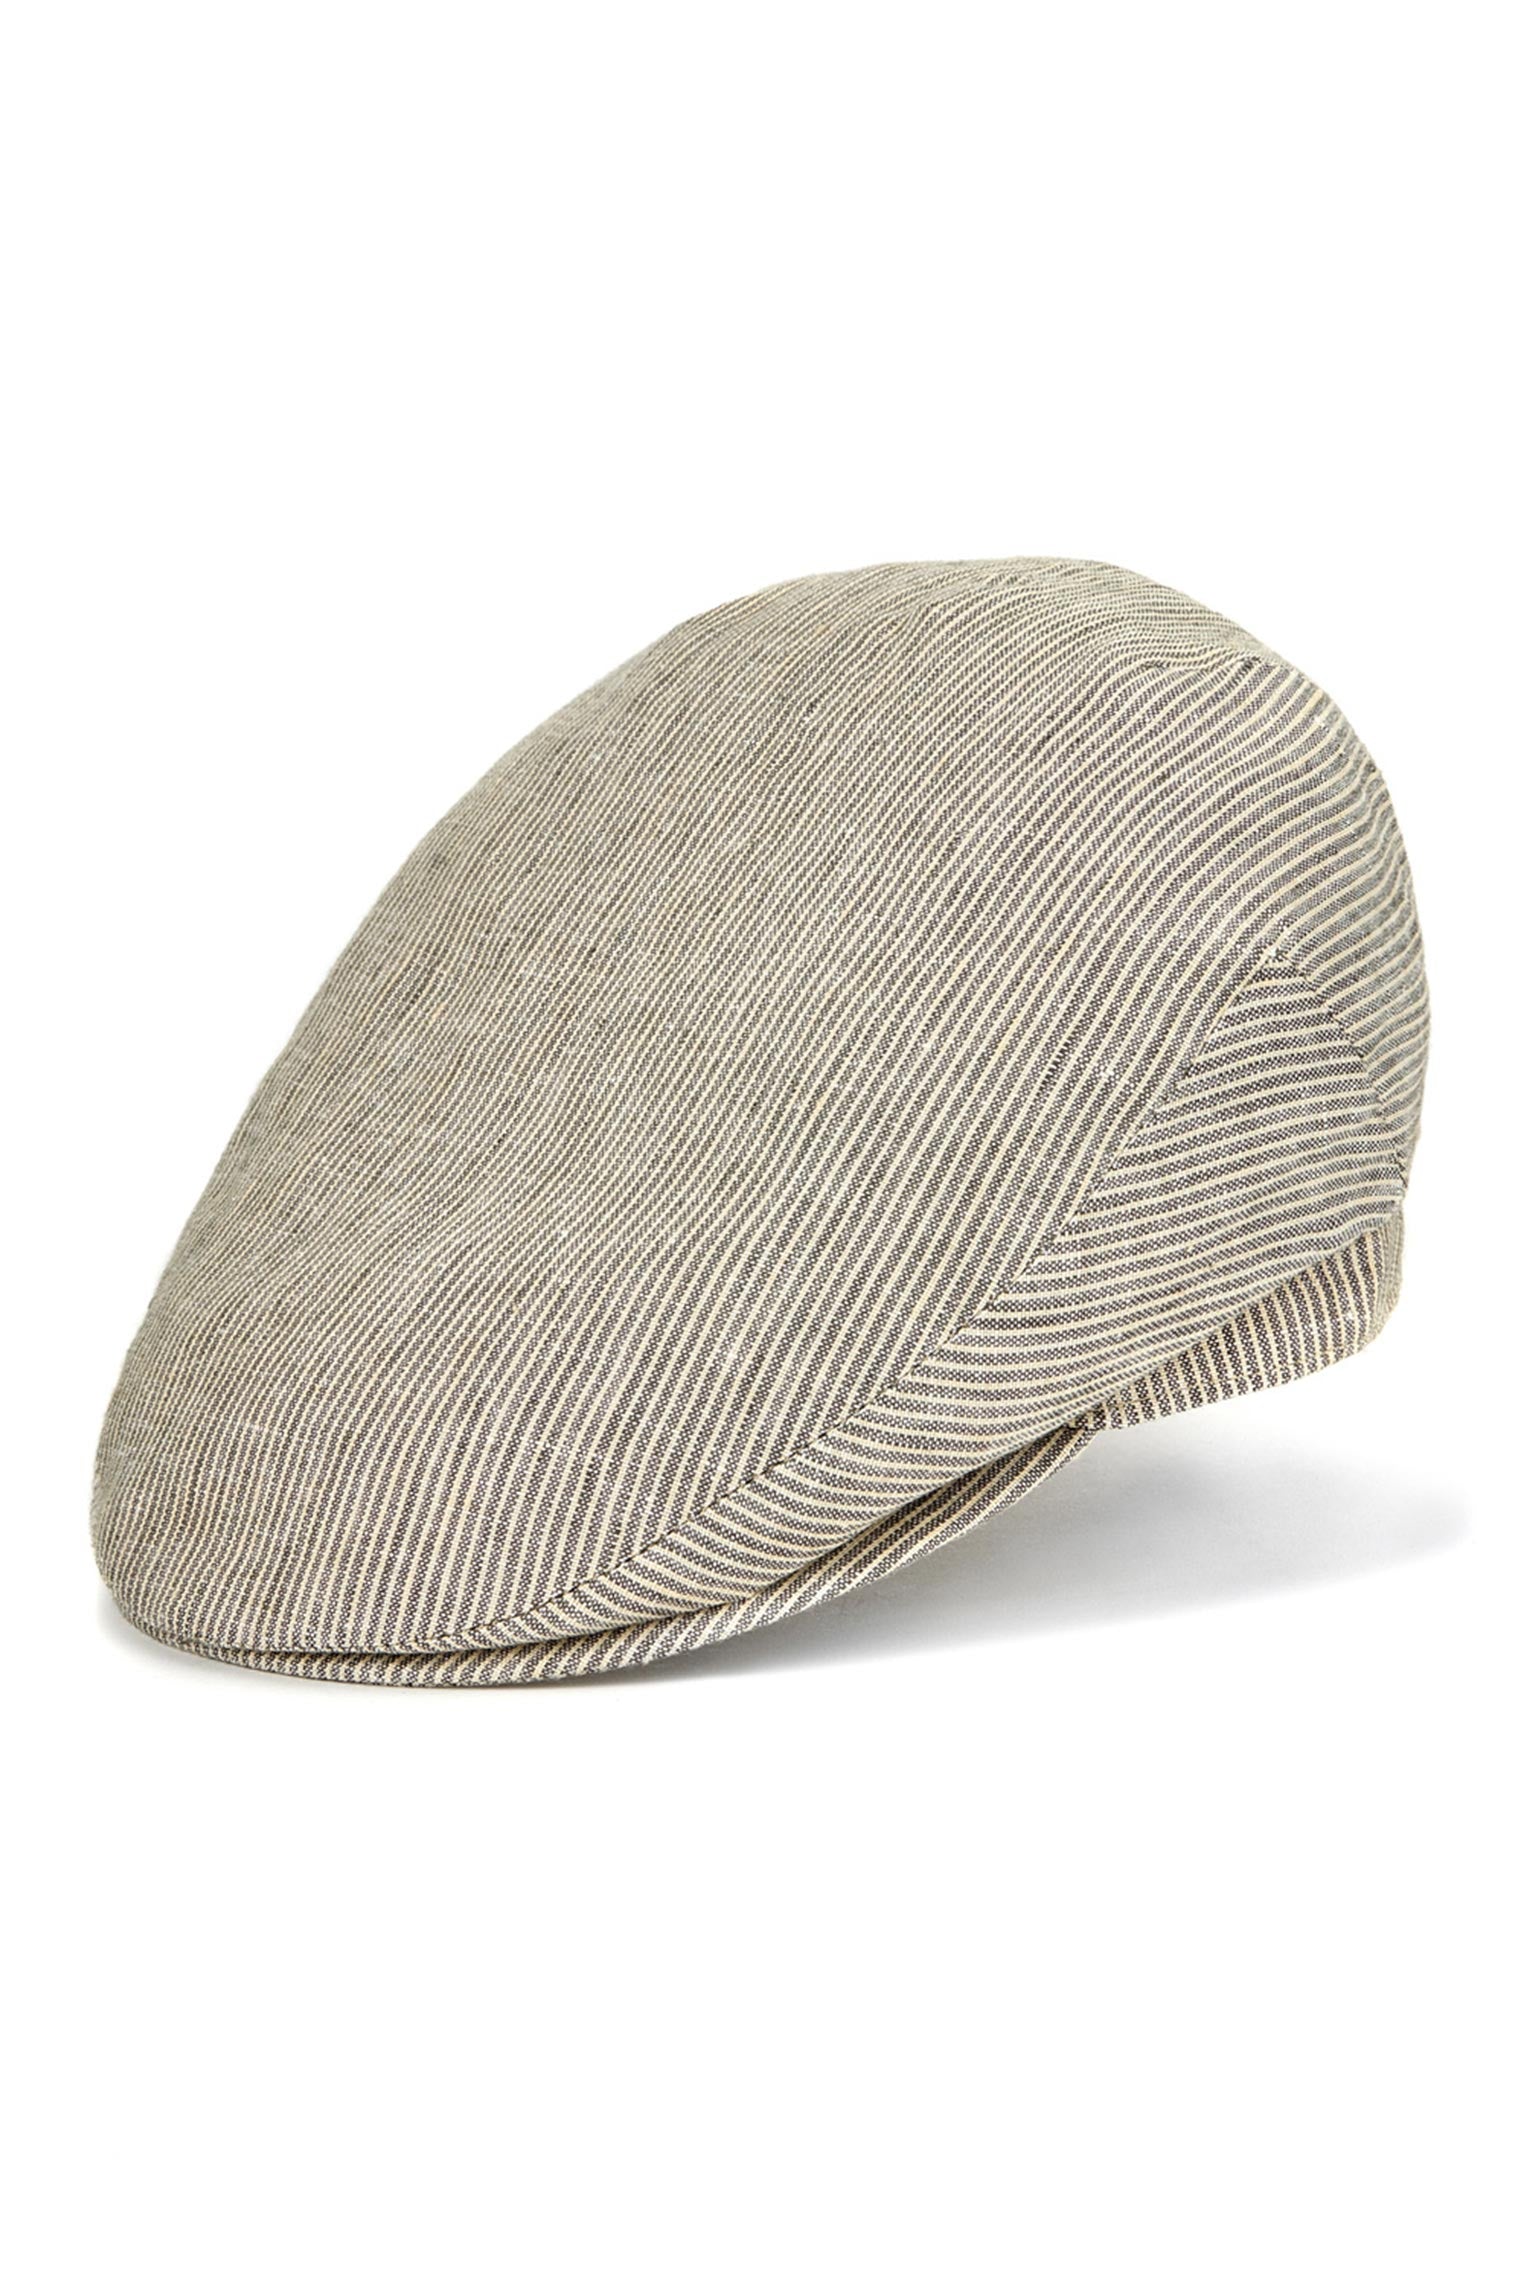 Linen Cap - Buy Cannes Linen Flat Cap - Lock & Co. Hatters. Hats for ...